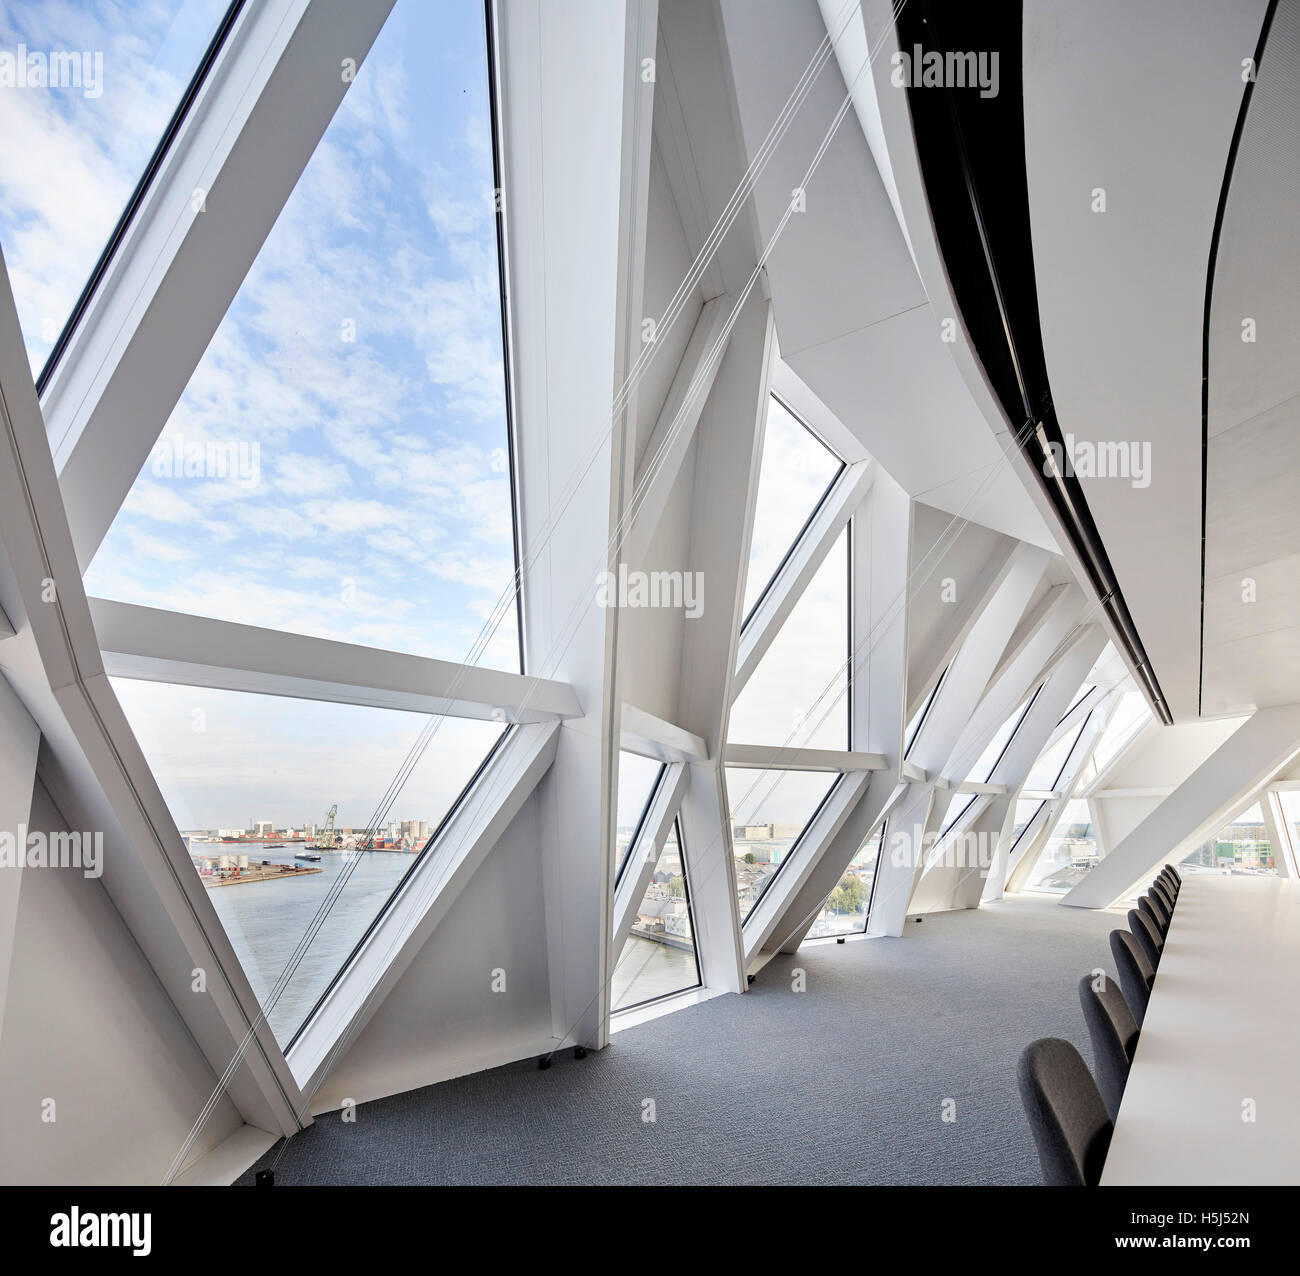 Sala riunioni con finestra triangolare riquadri. Casa porta ad Anversa, Belgio. Architetto: Zaha Hadid Architects, 2016. Foto Stock